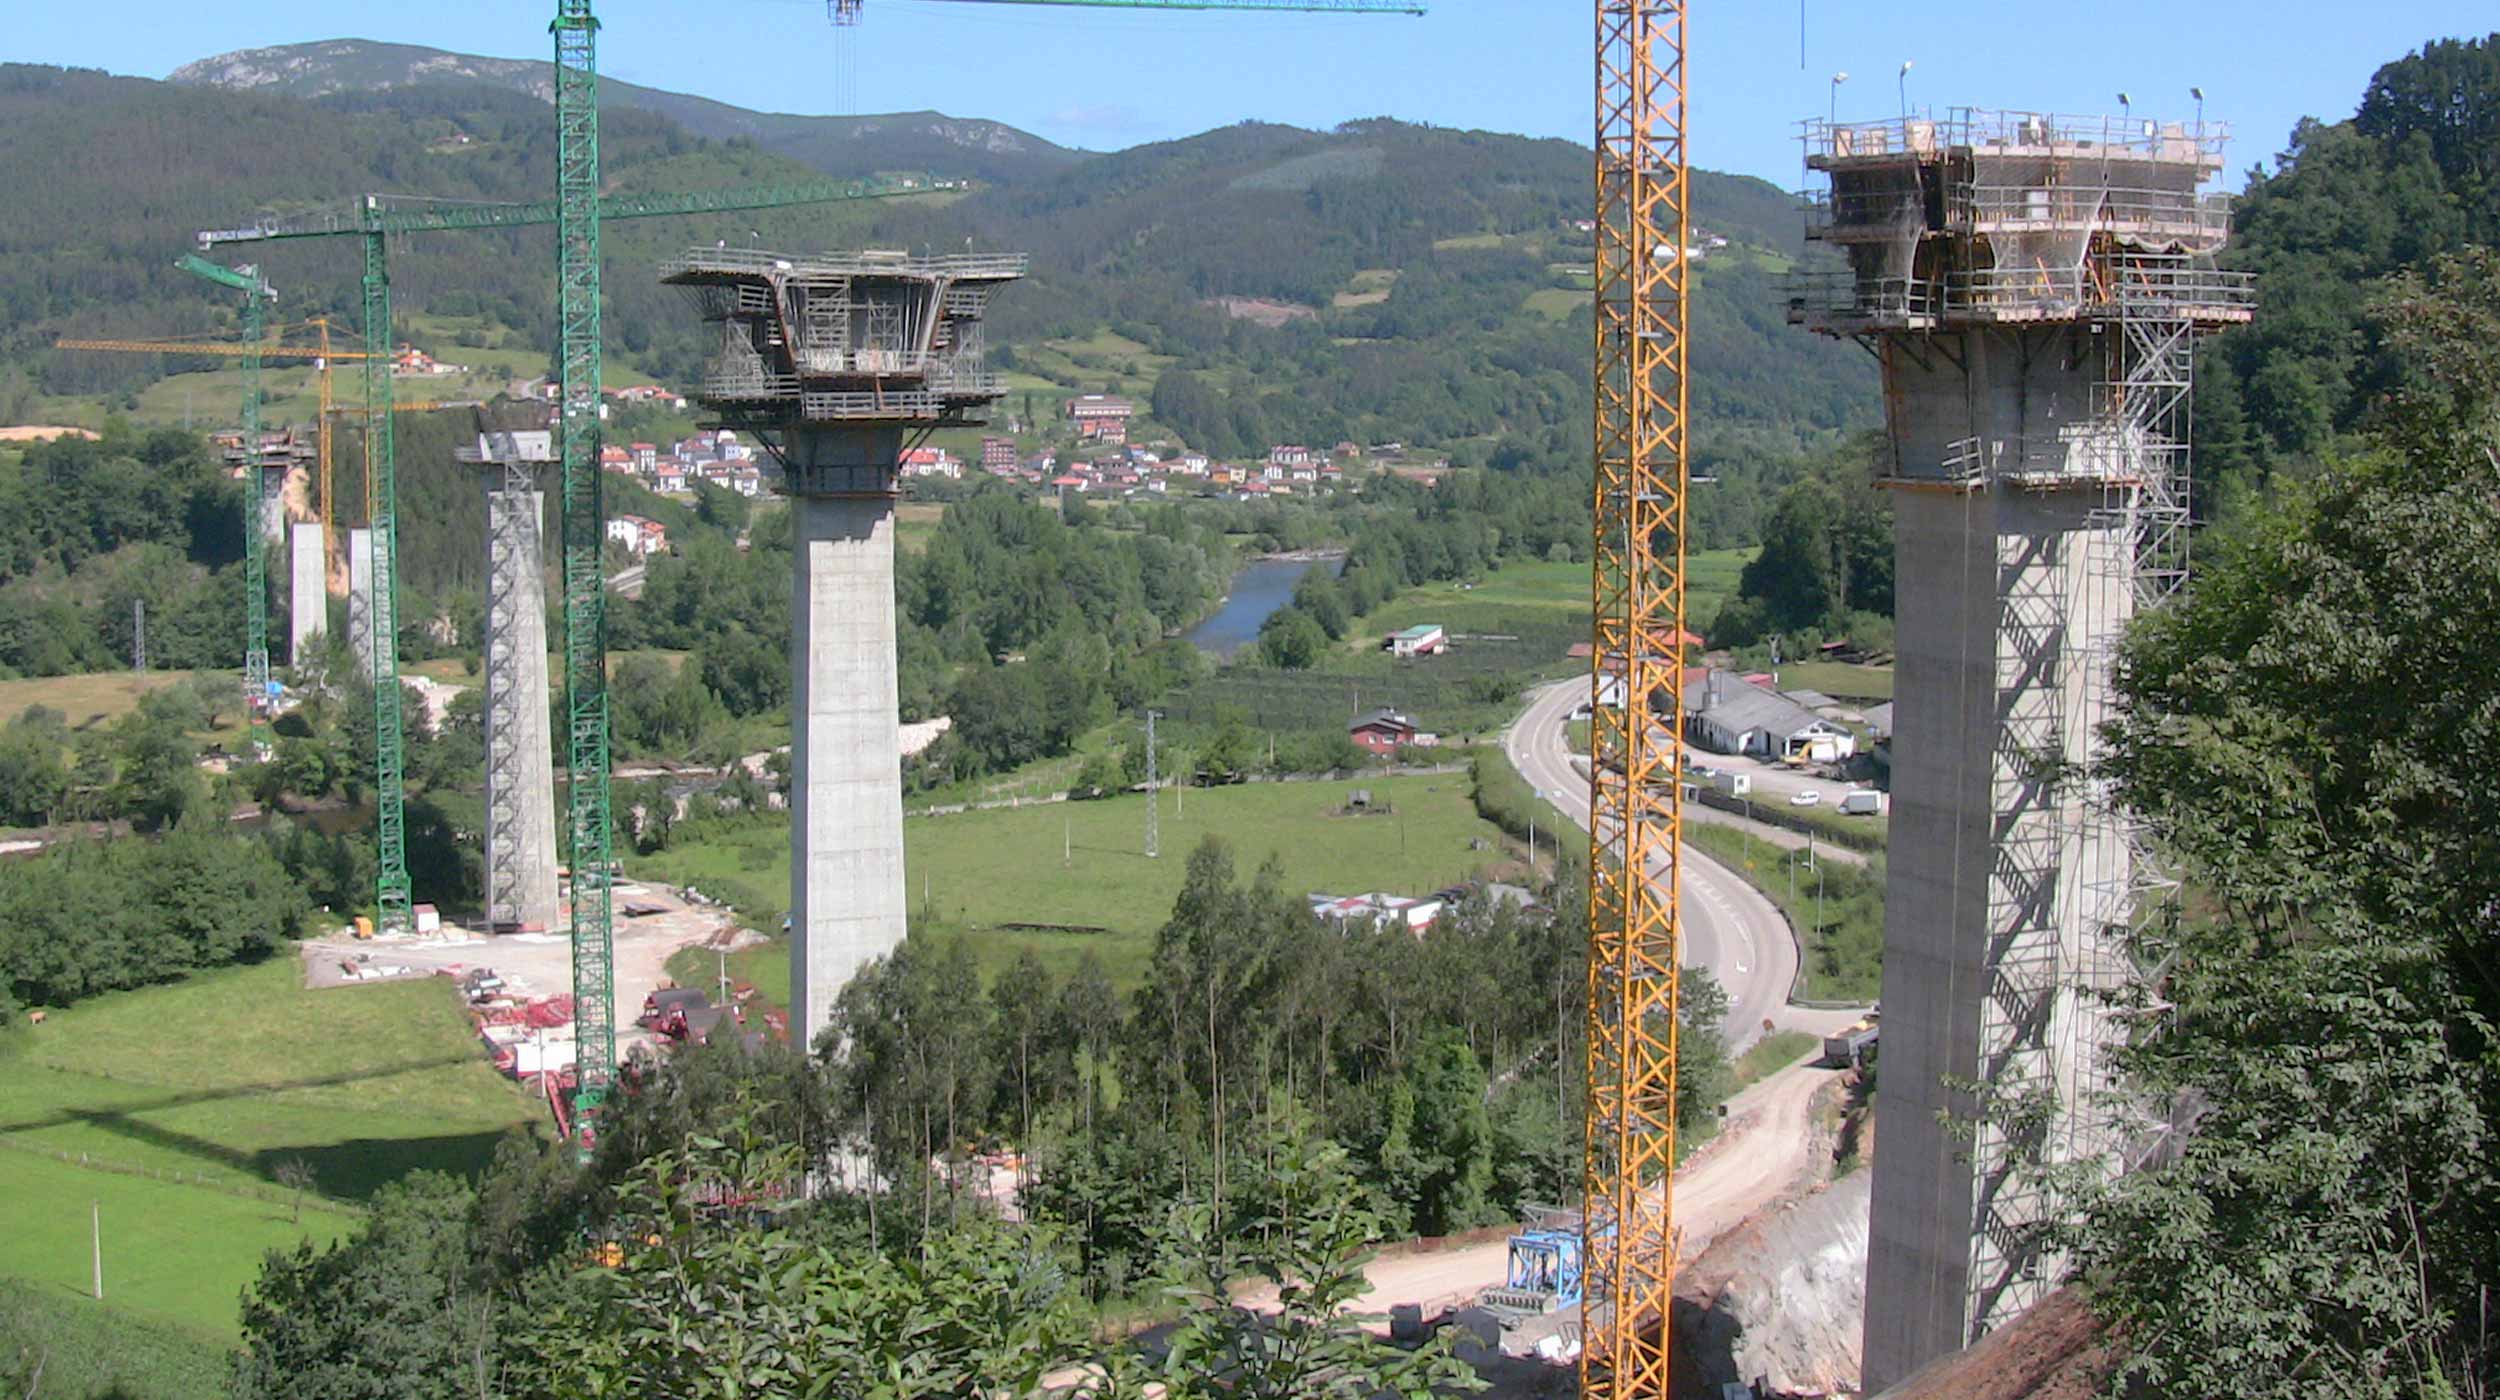 Wiadukt Narcea to największy obiekt mostowy w ciągu drogi ekspresowej A-63 na terenie hiszpańskiej prowincji Asturia.